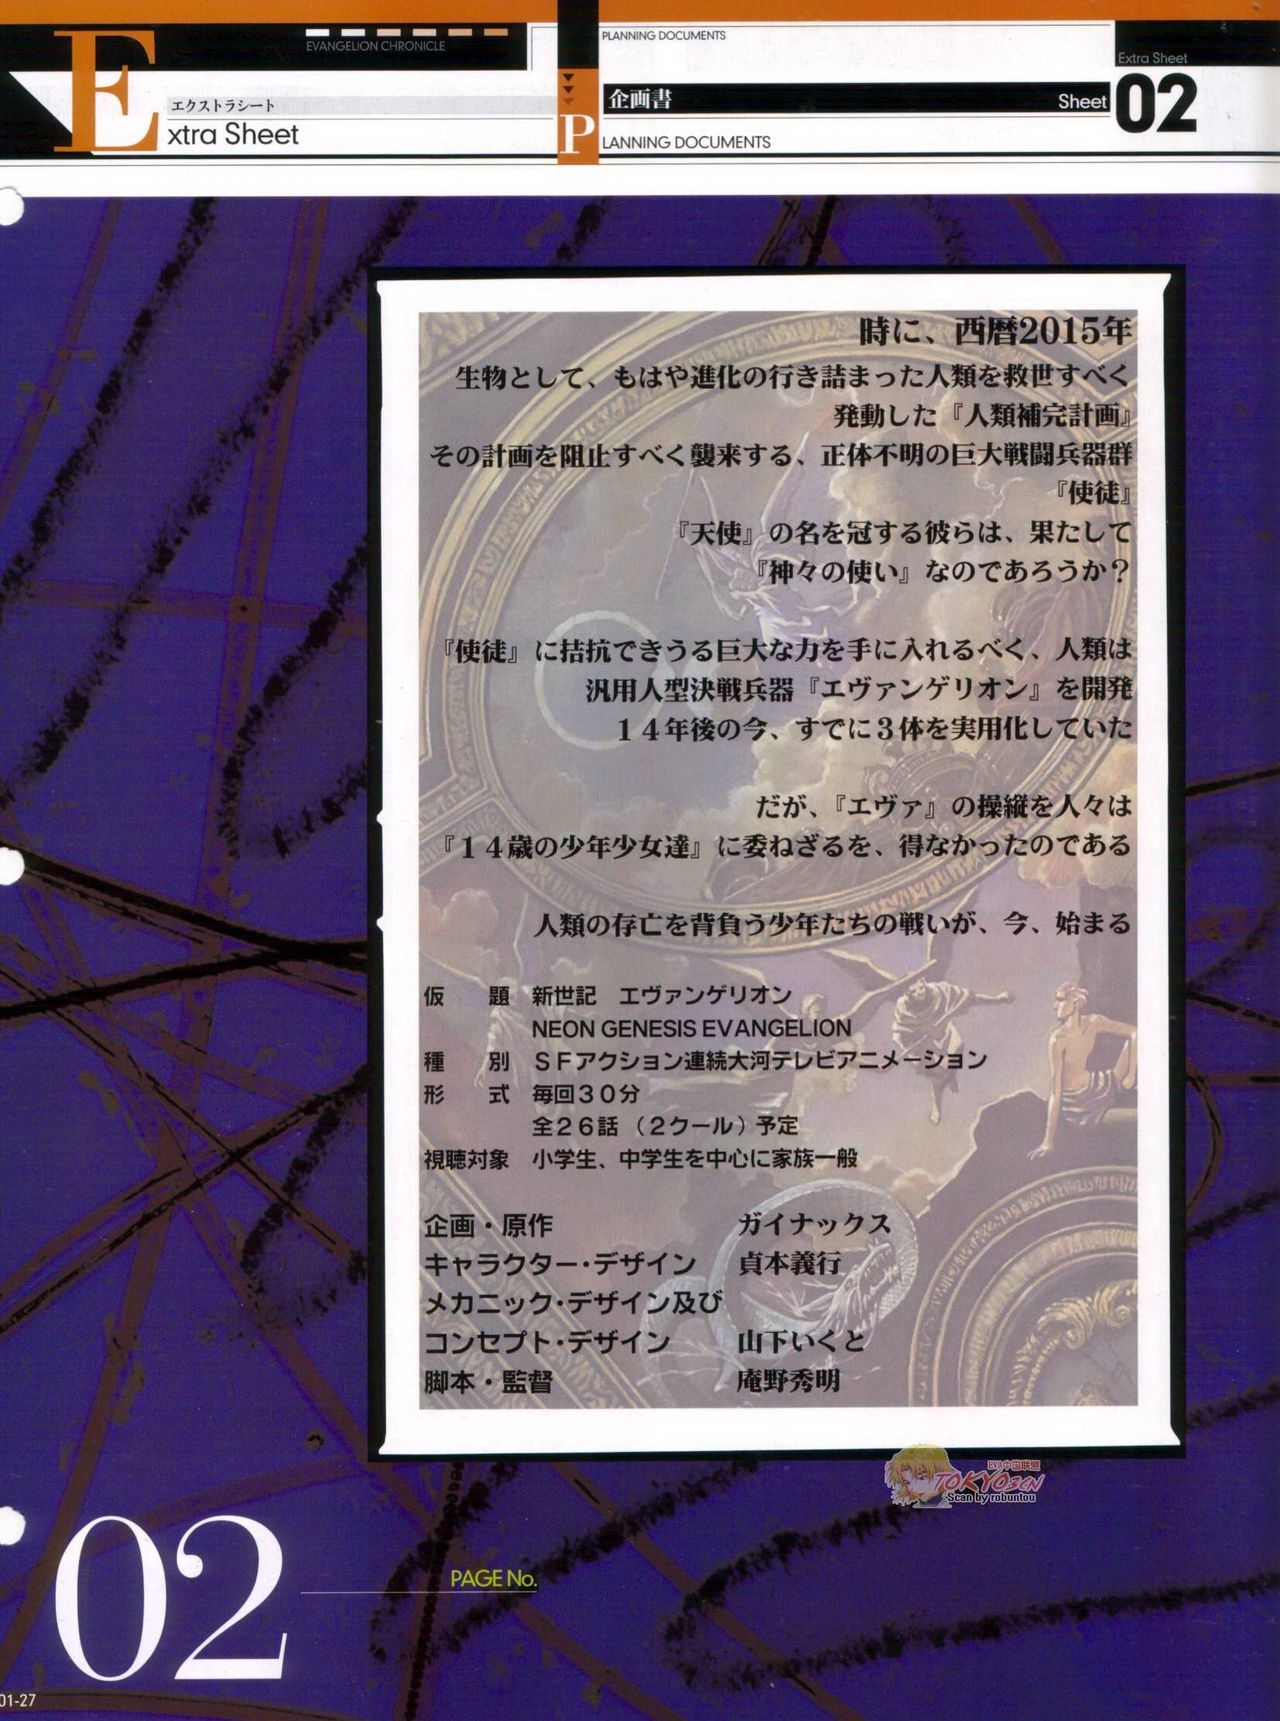 Neon Genesis Evangelion - Chronicle 1 27